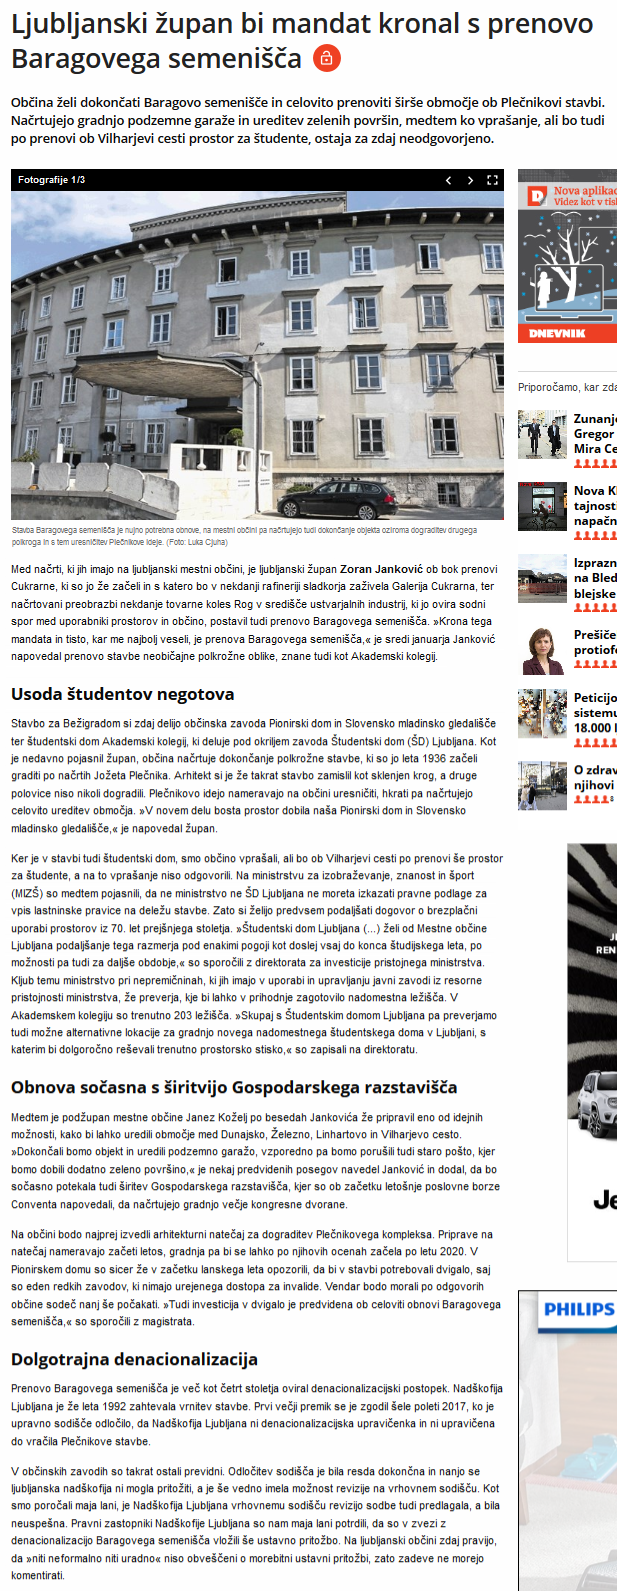 screenshot-www.dnevnik.si-2019-02-01-14-52-40.png